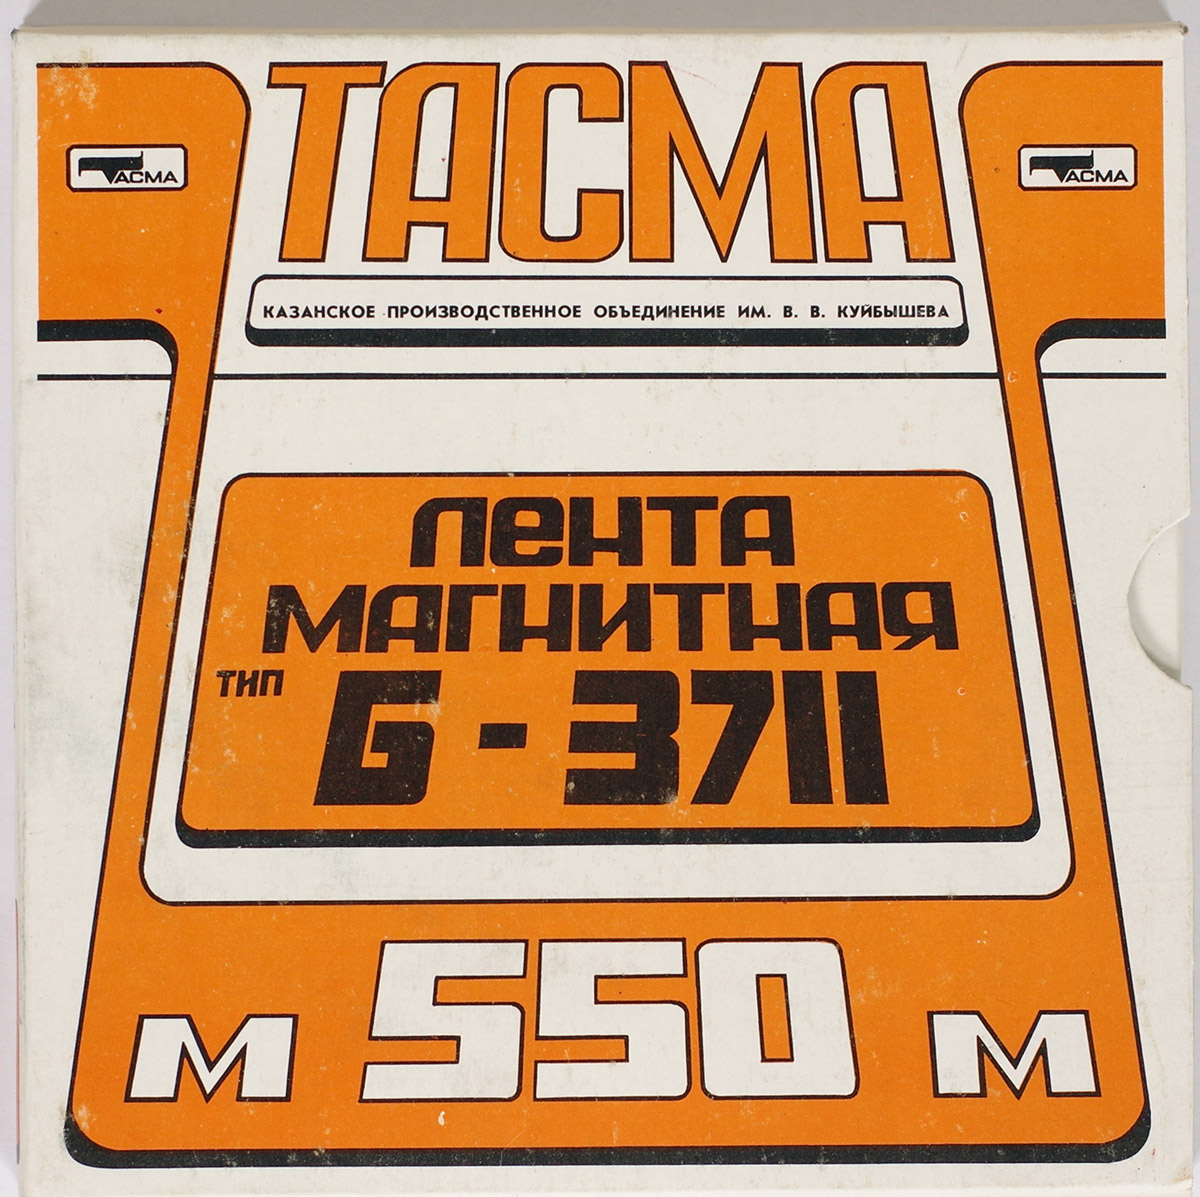  ТАСМА Б-3711 в продаже